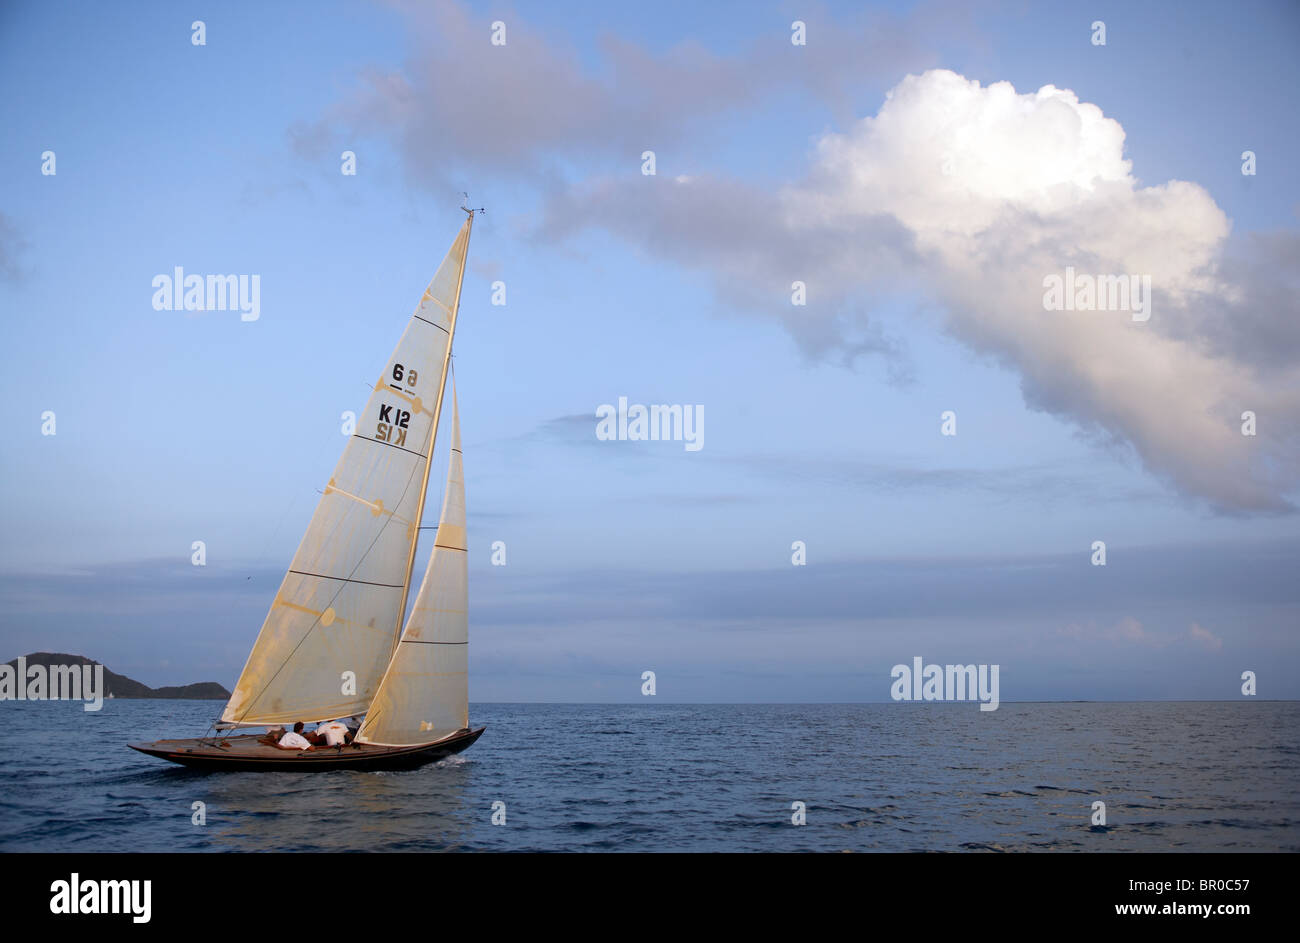 Sailing upwind at dusk. Stock Photo